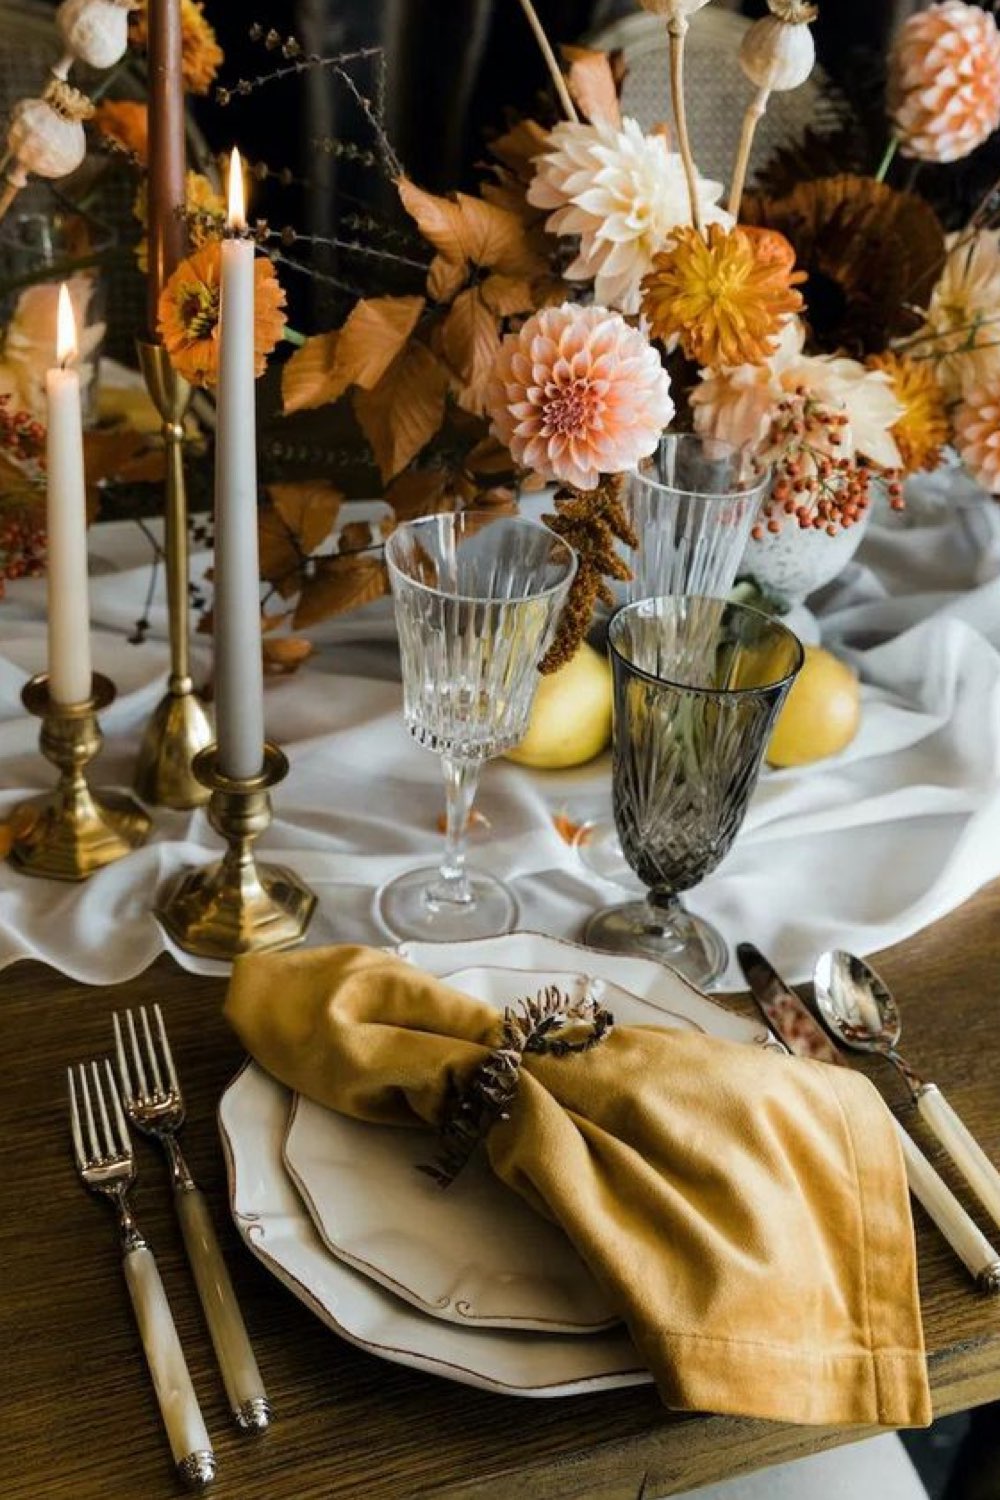 decoration table automne a copier élégante serviette en tissu couleur ocre safran bougies verre en verre fumé fleur orangée